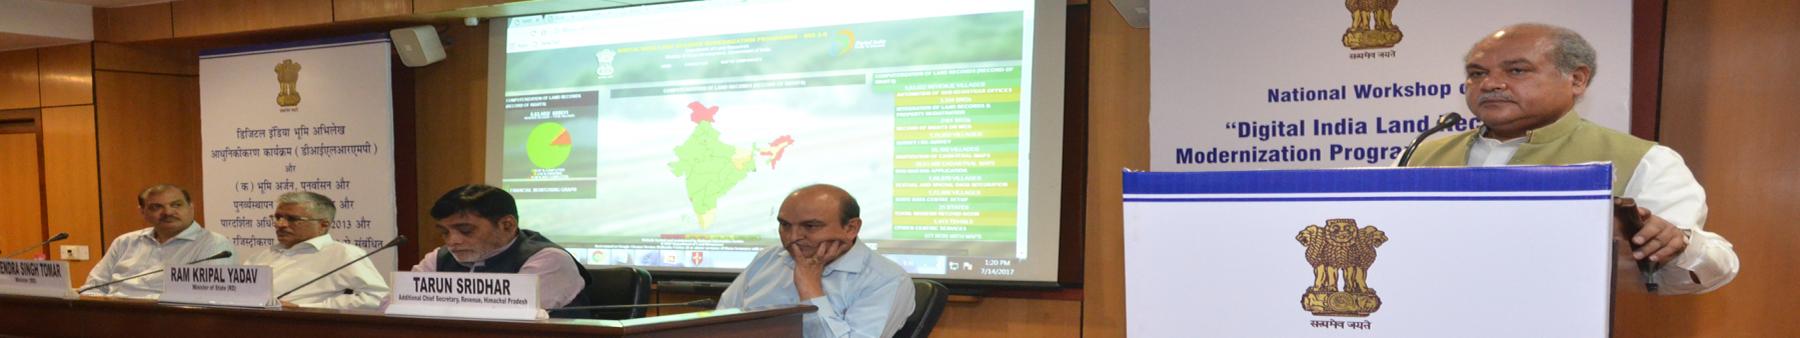 National workshop of Digital India Land Resources Modernization Program